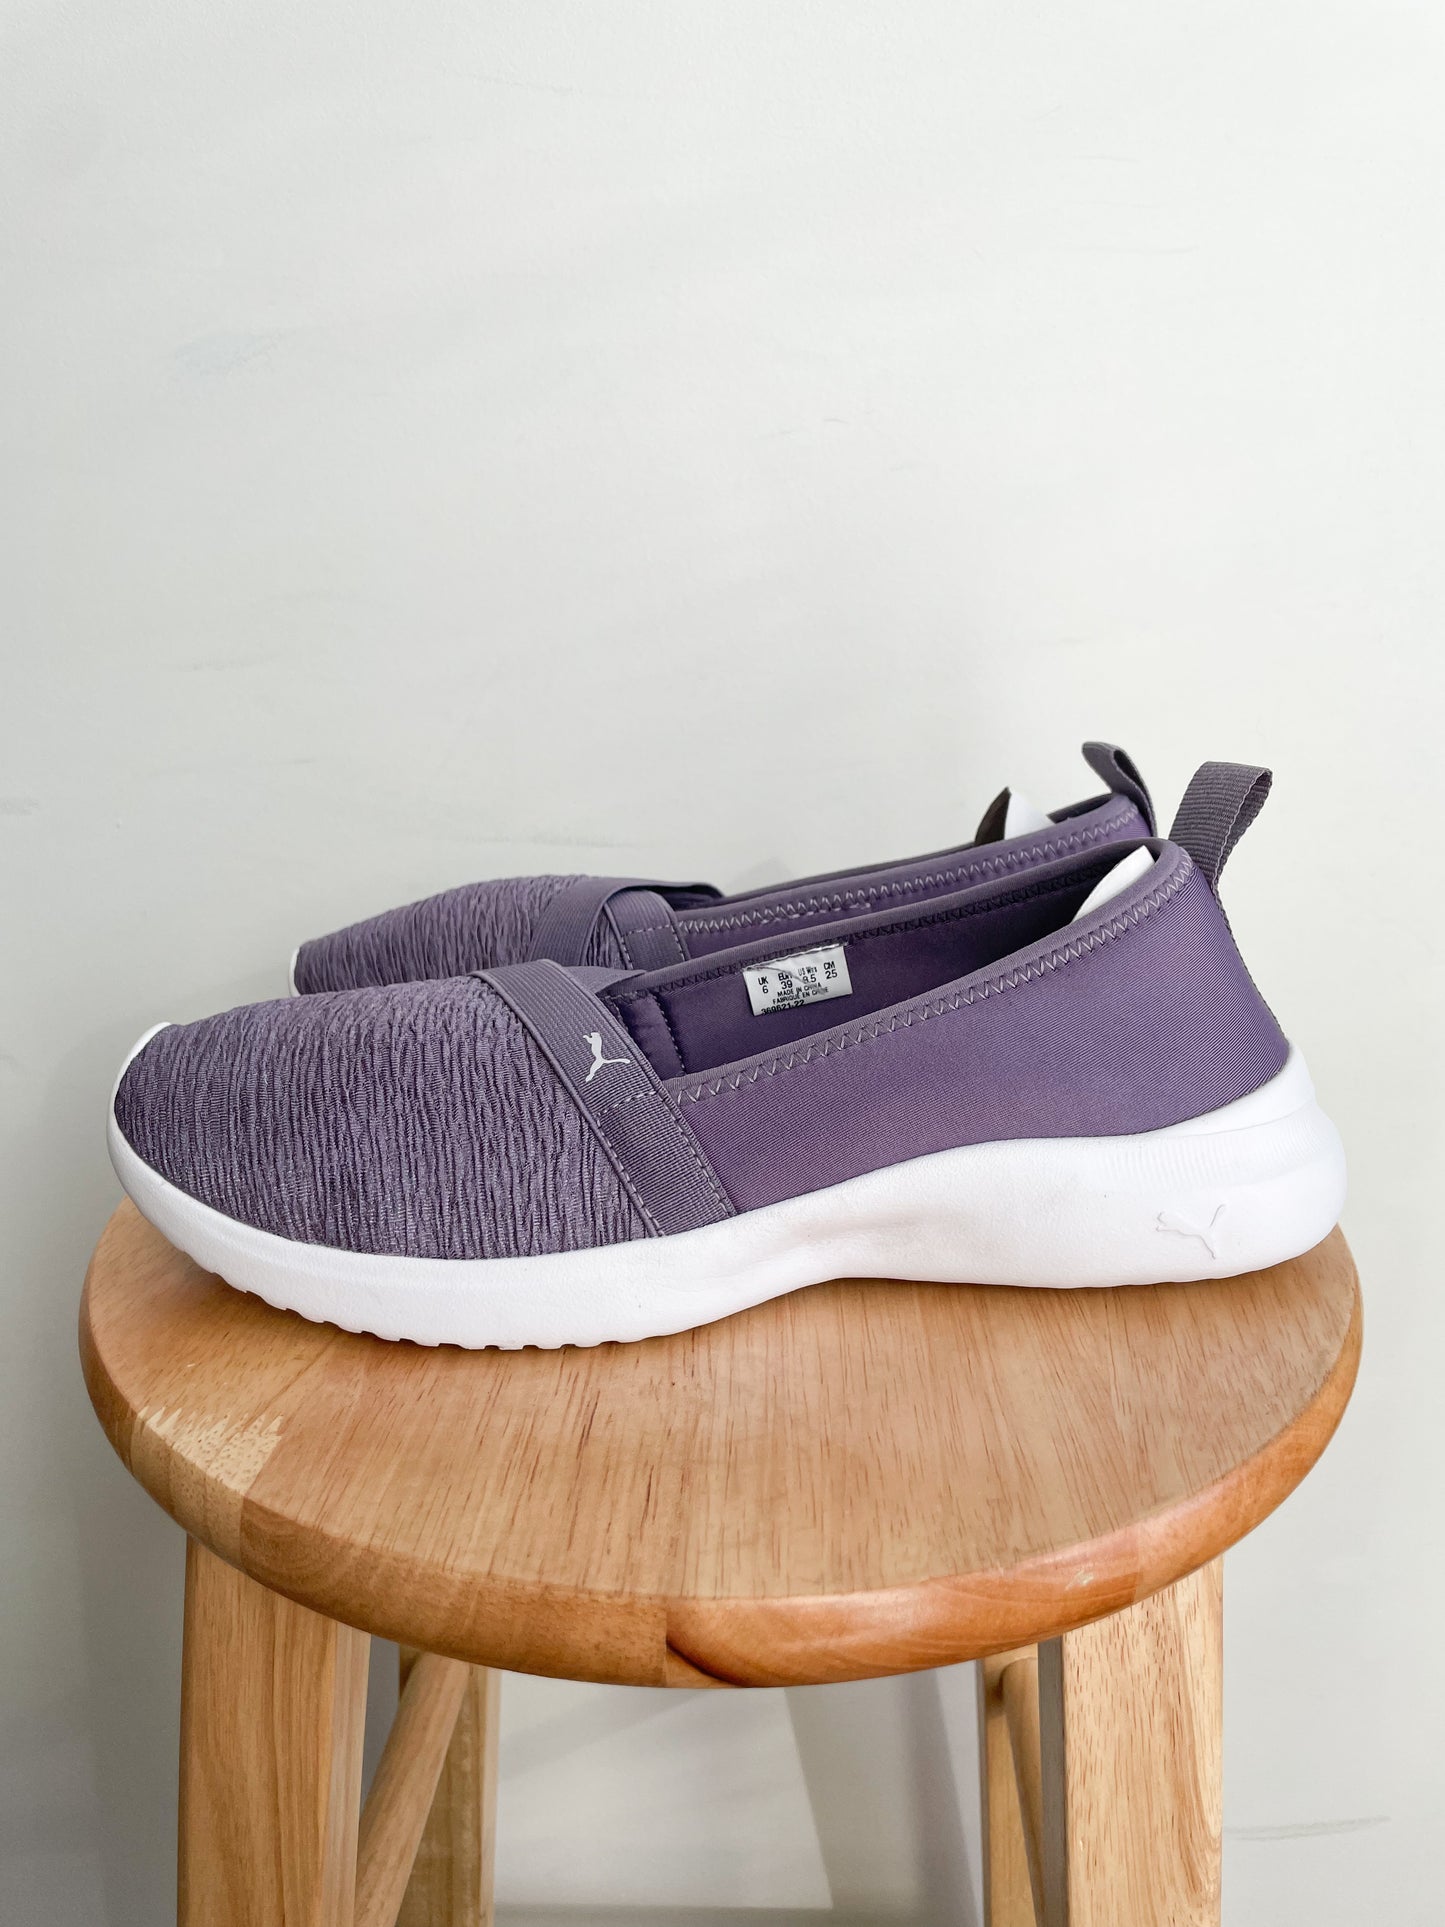 Puma Dusty Purple Soft Foam Walking Slip On Shoes - Size 8.5